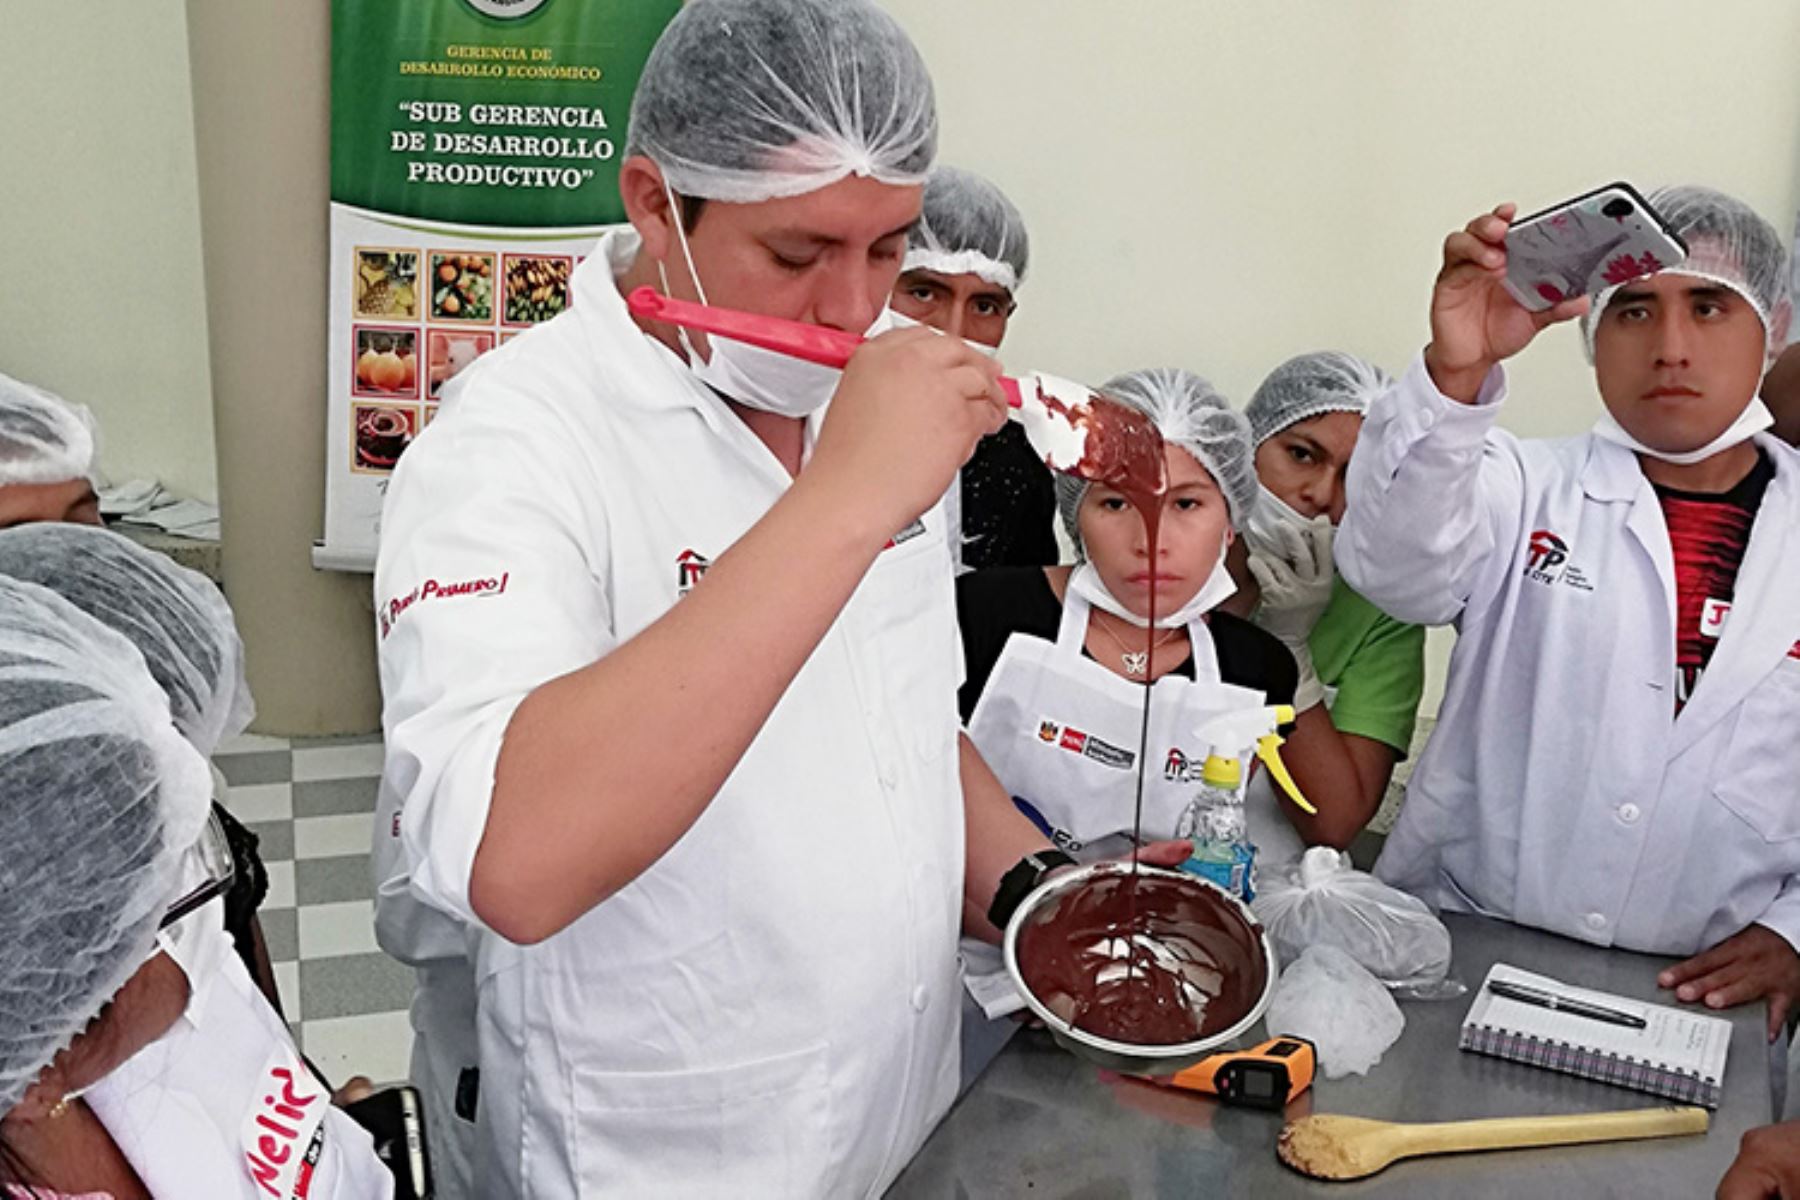 Cite Agroindustrial Vraem ofreció capacitación en Pangoa sobre preparación de chocolates y bombones con plantas aromáticas y frutos exóticos.